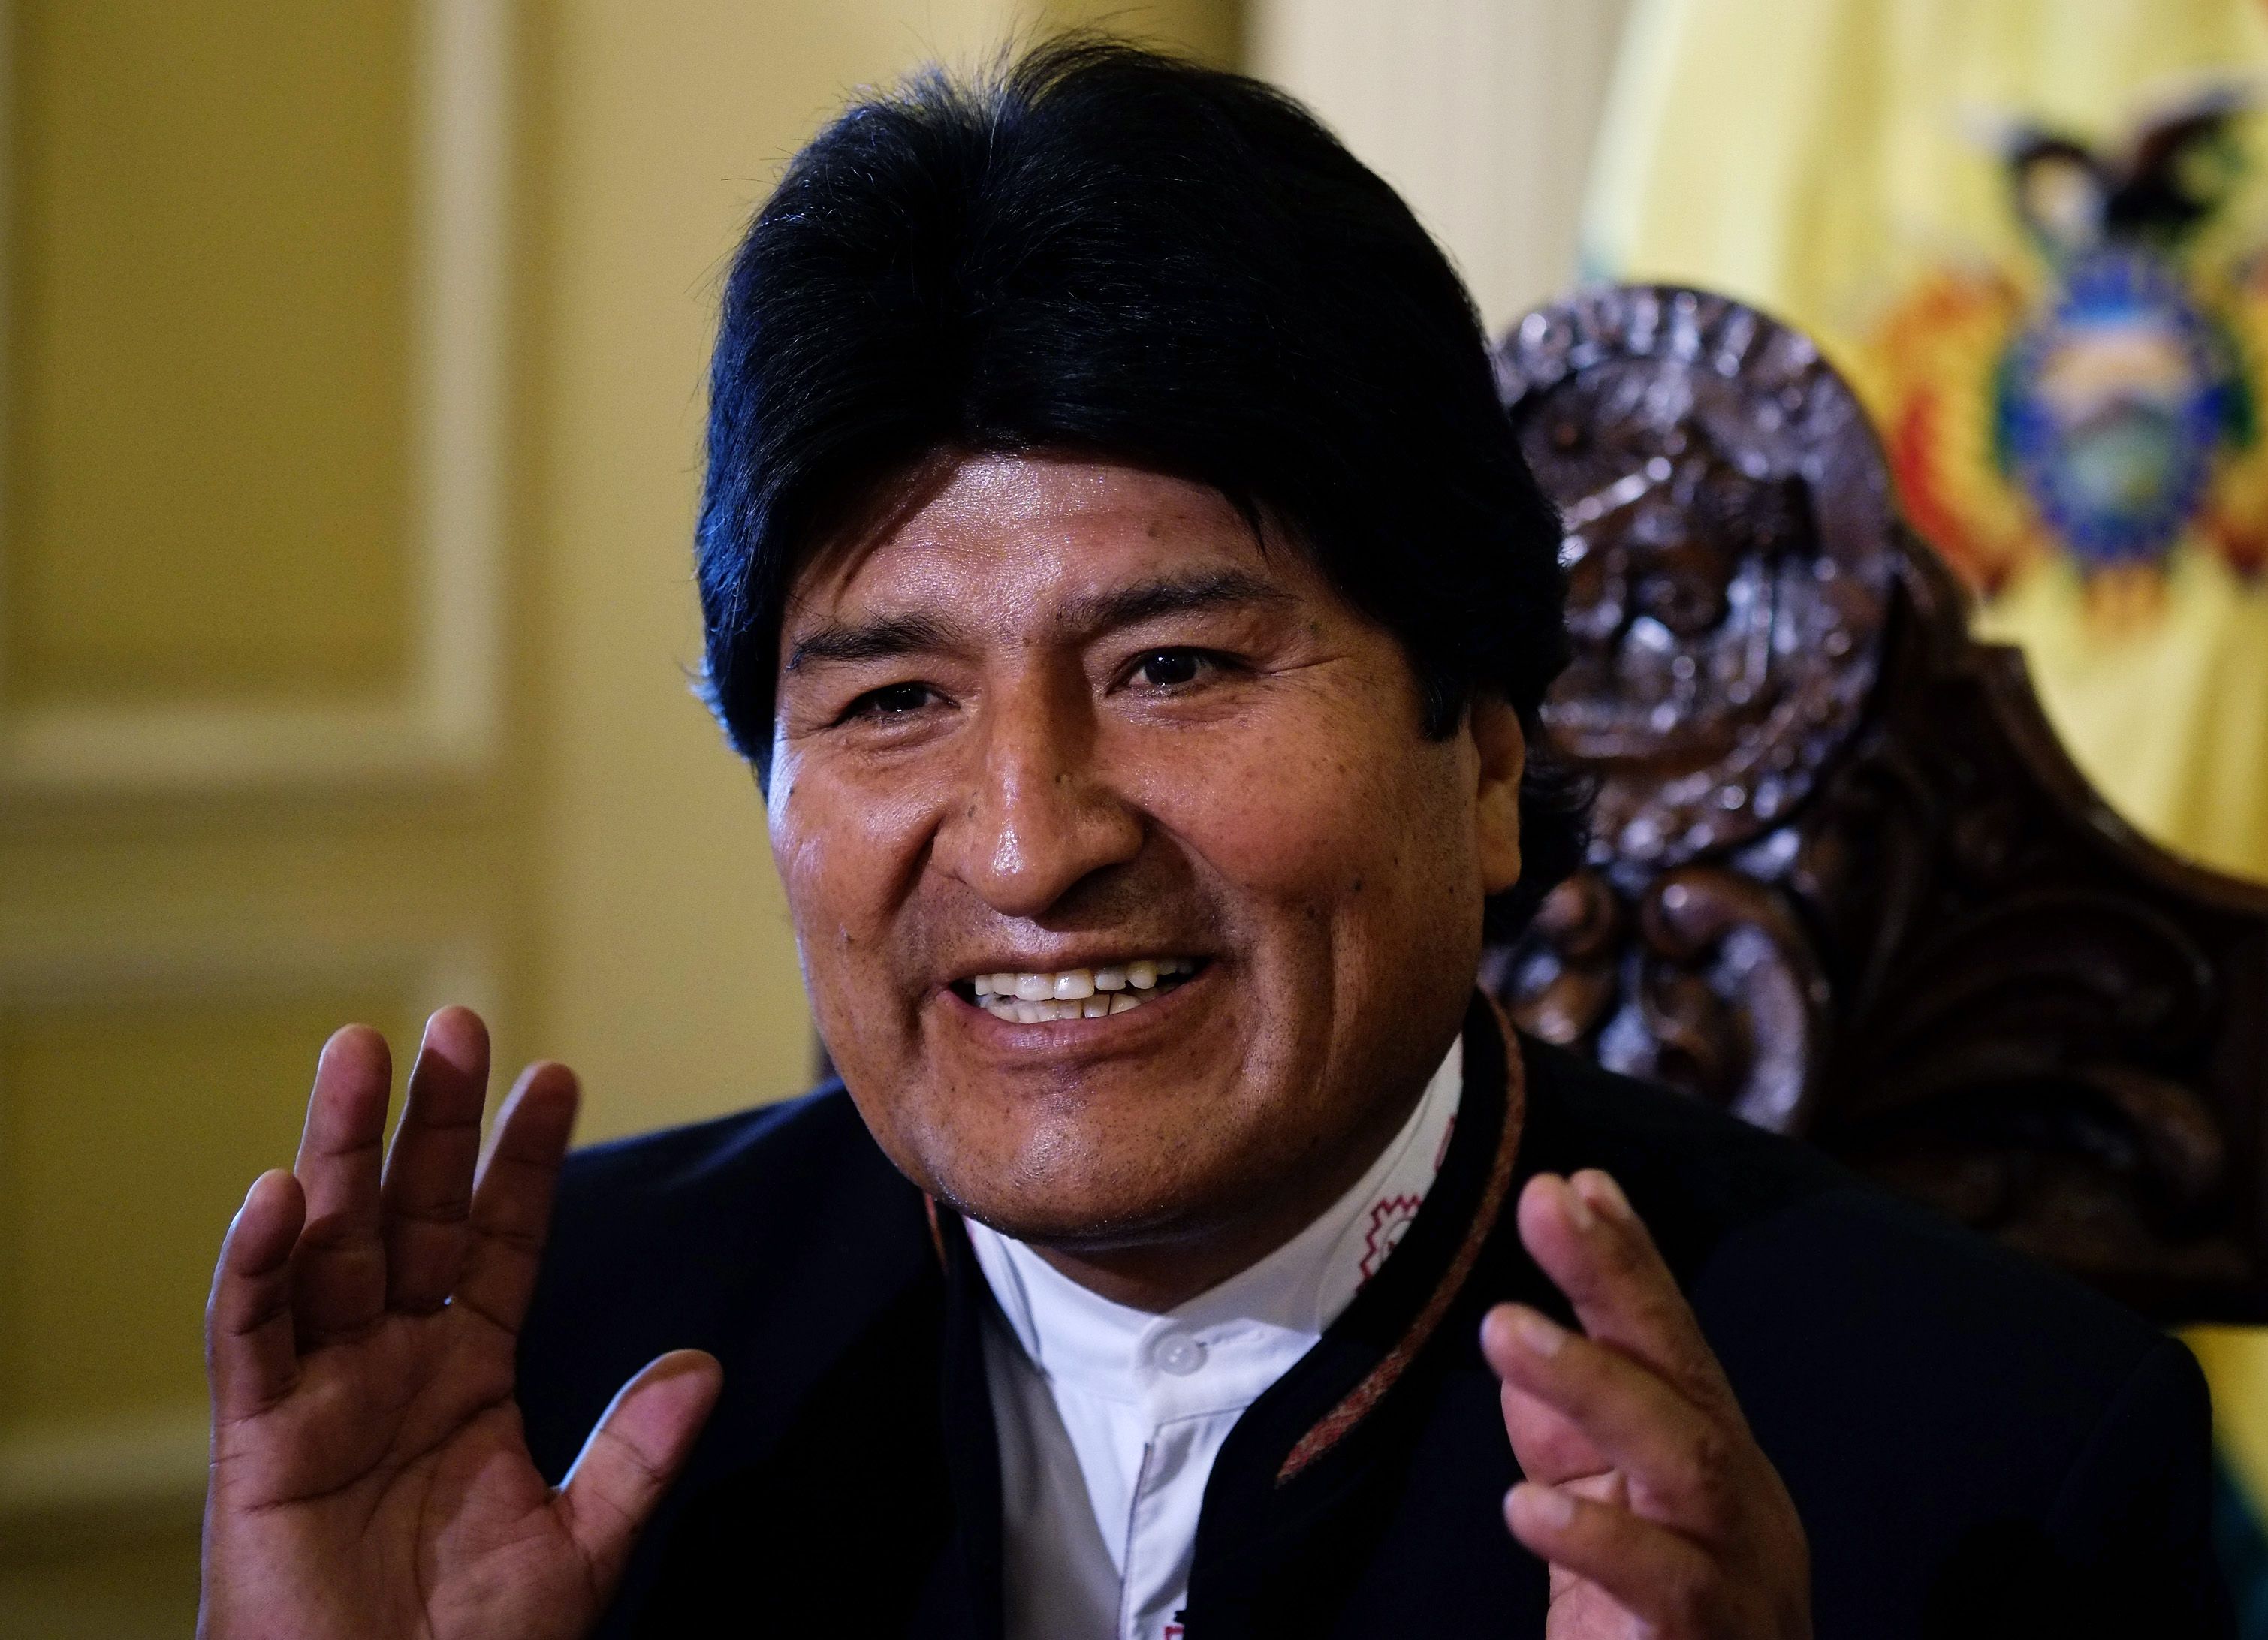 Convocan a elegir gobernadores y alcaldes en Bolivia el 29 de marzo de 2015. (Fuente: Archivo)